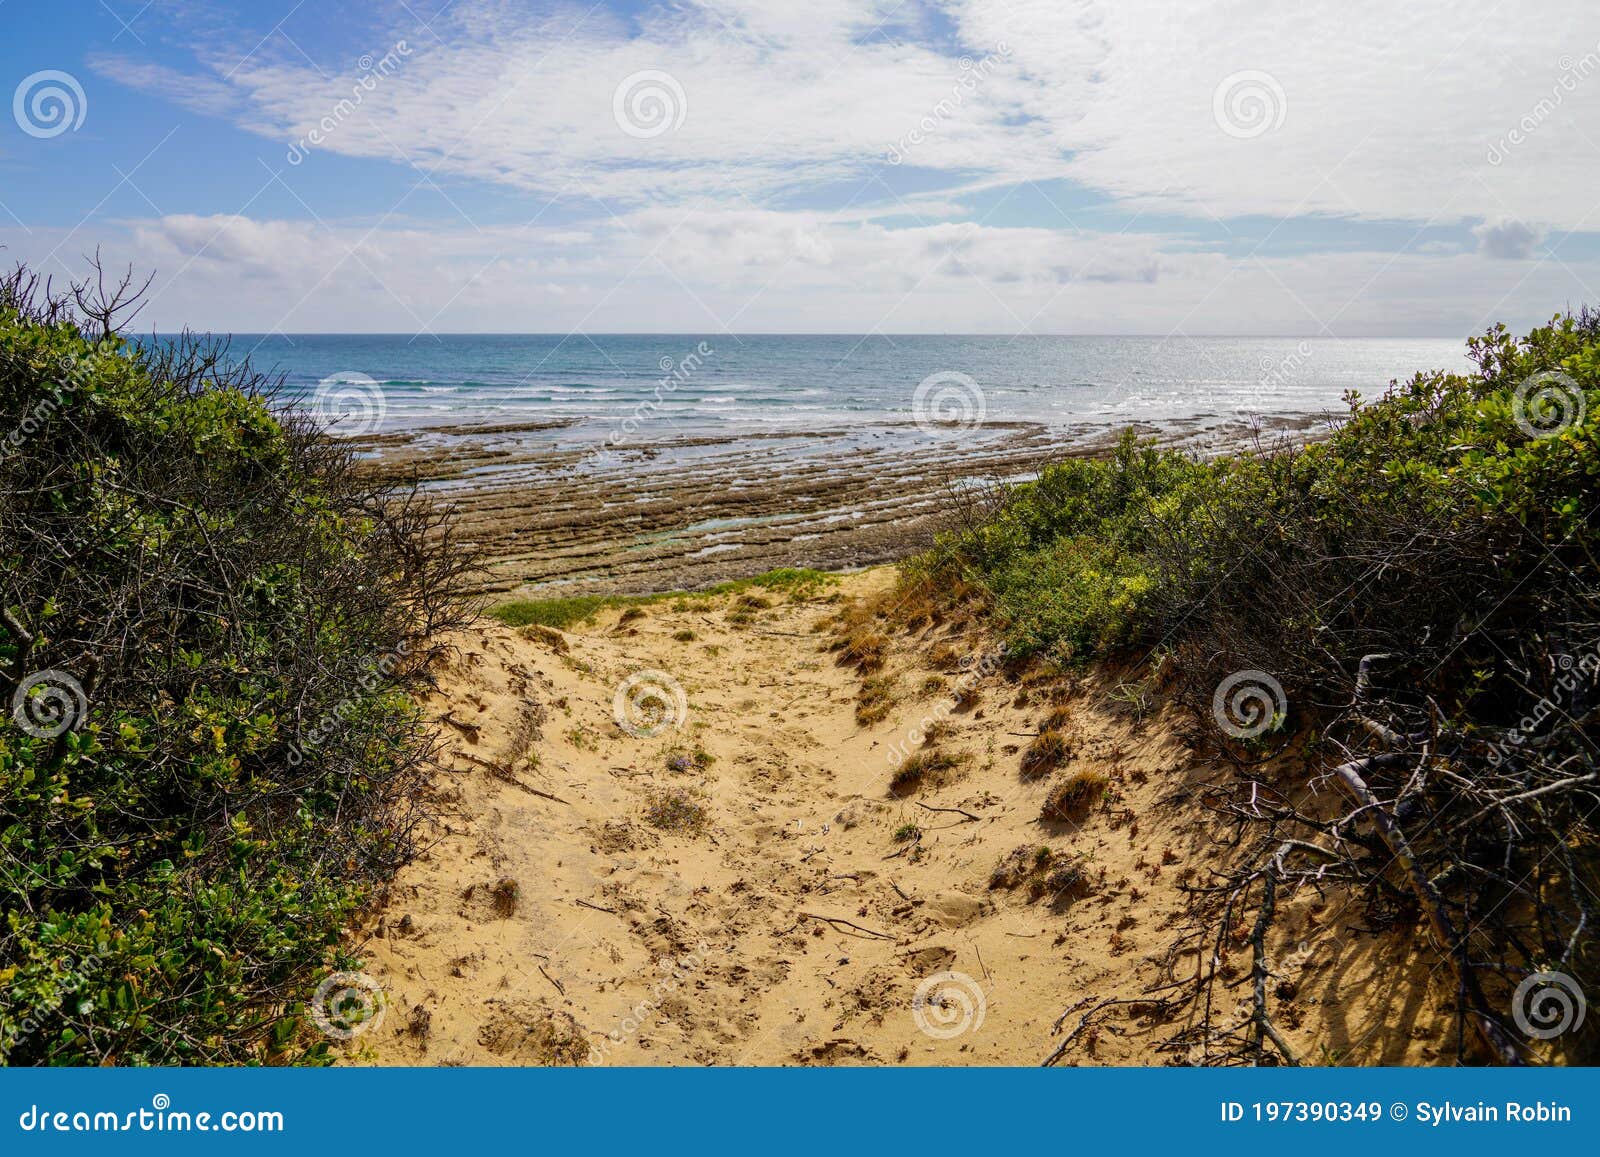 2022西乐索海滩游玩攻略,这片海滩是欧美和澳洲游客的...【去哪儿攻略】